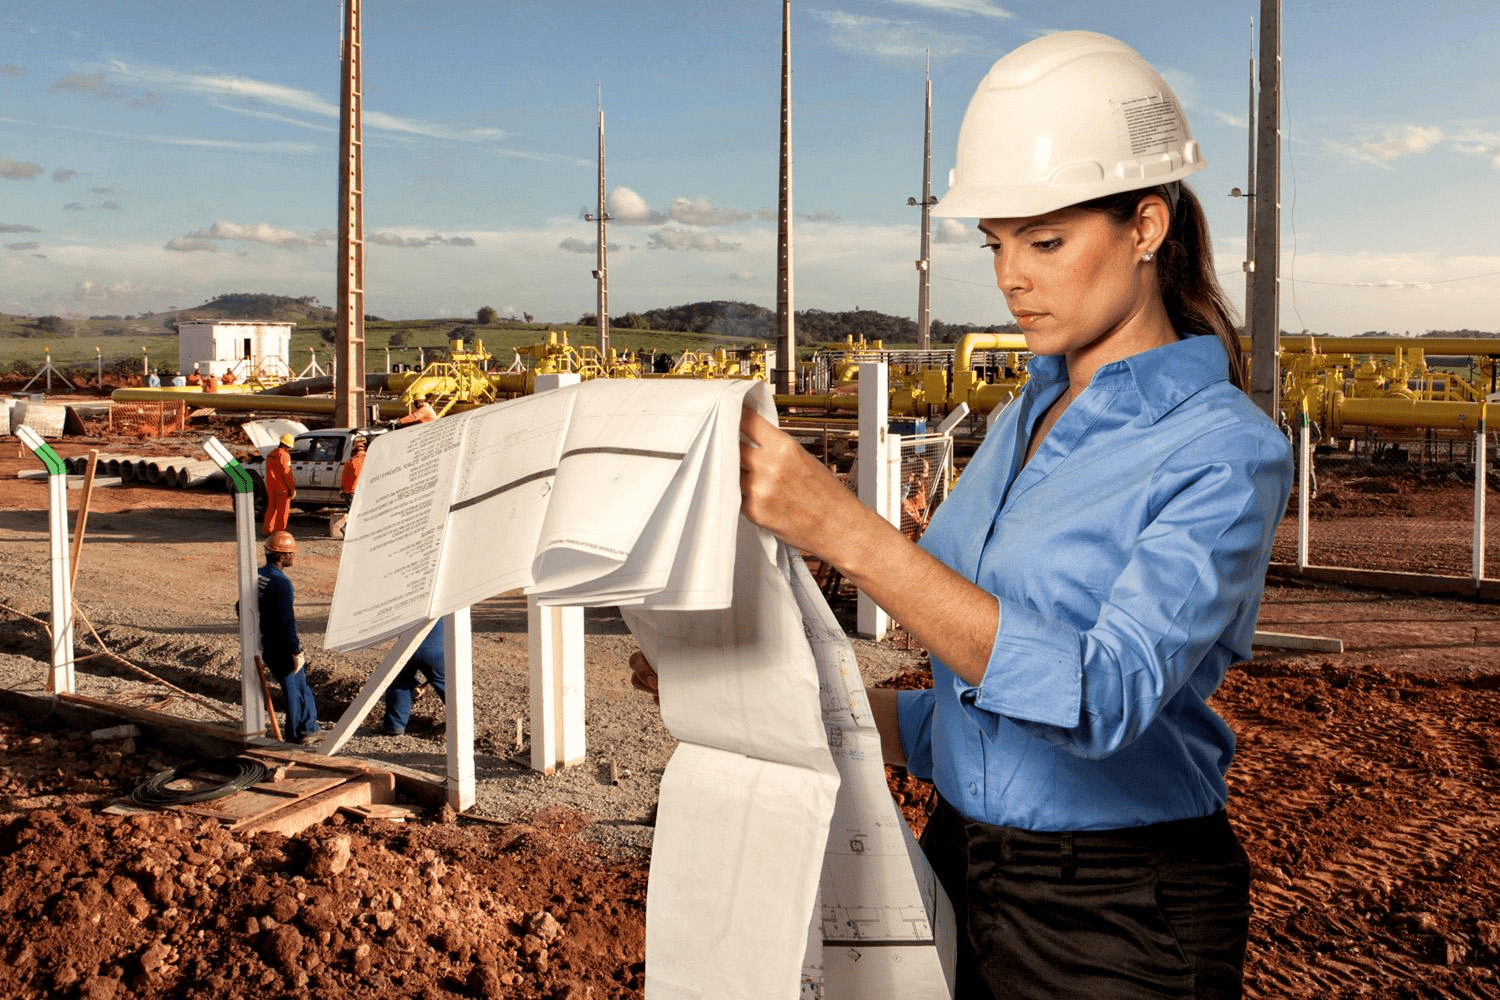 Mulheres começam a ganhar espaço no mercado de construção civil